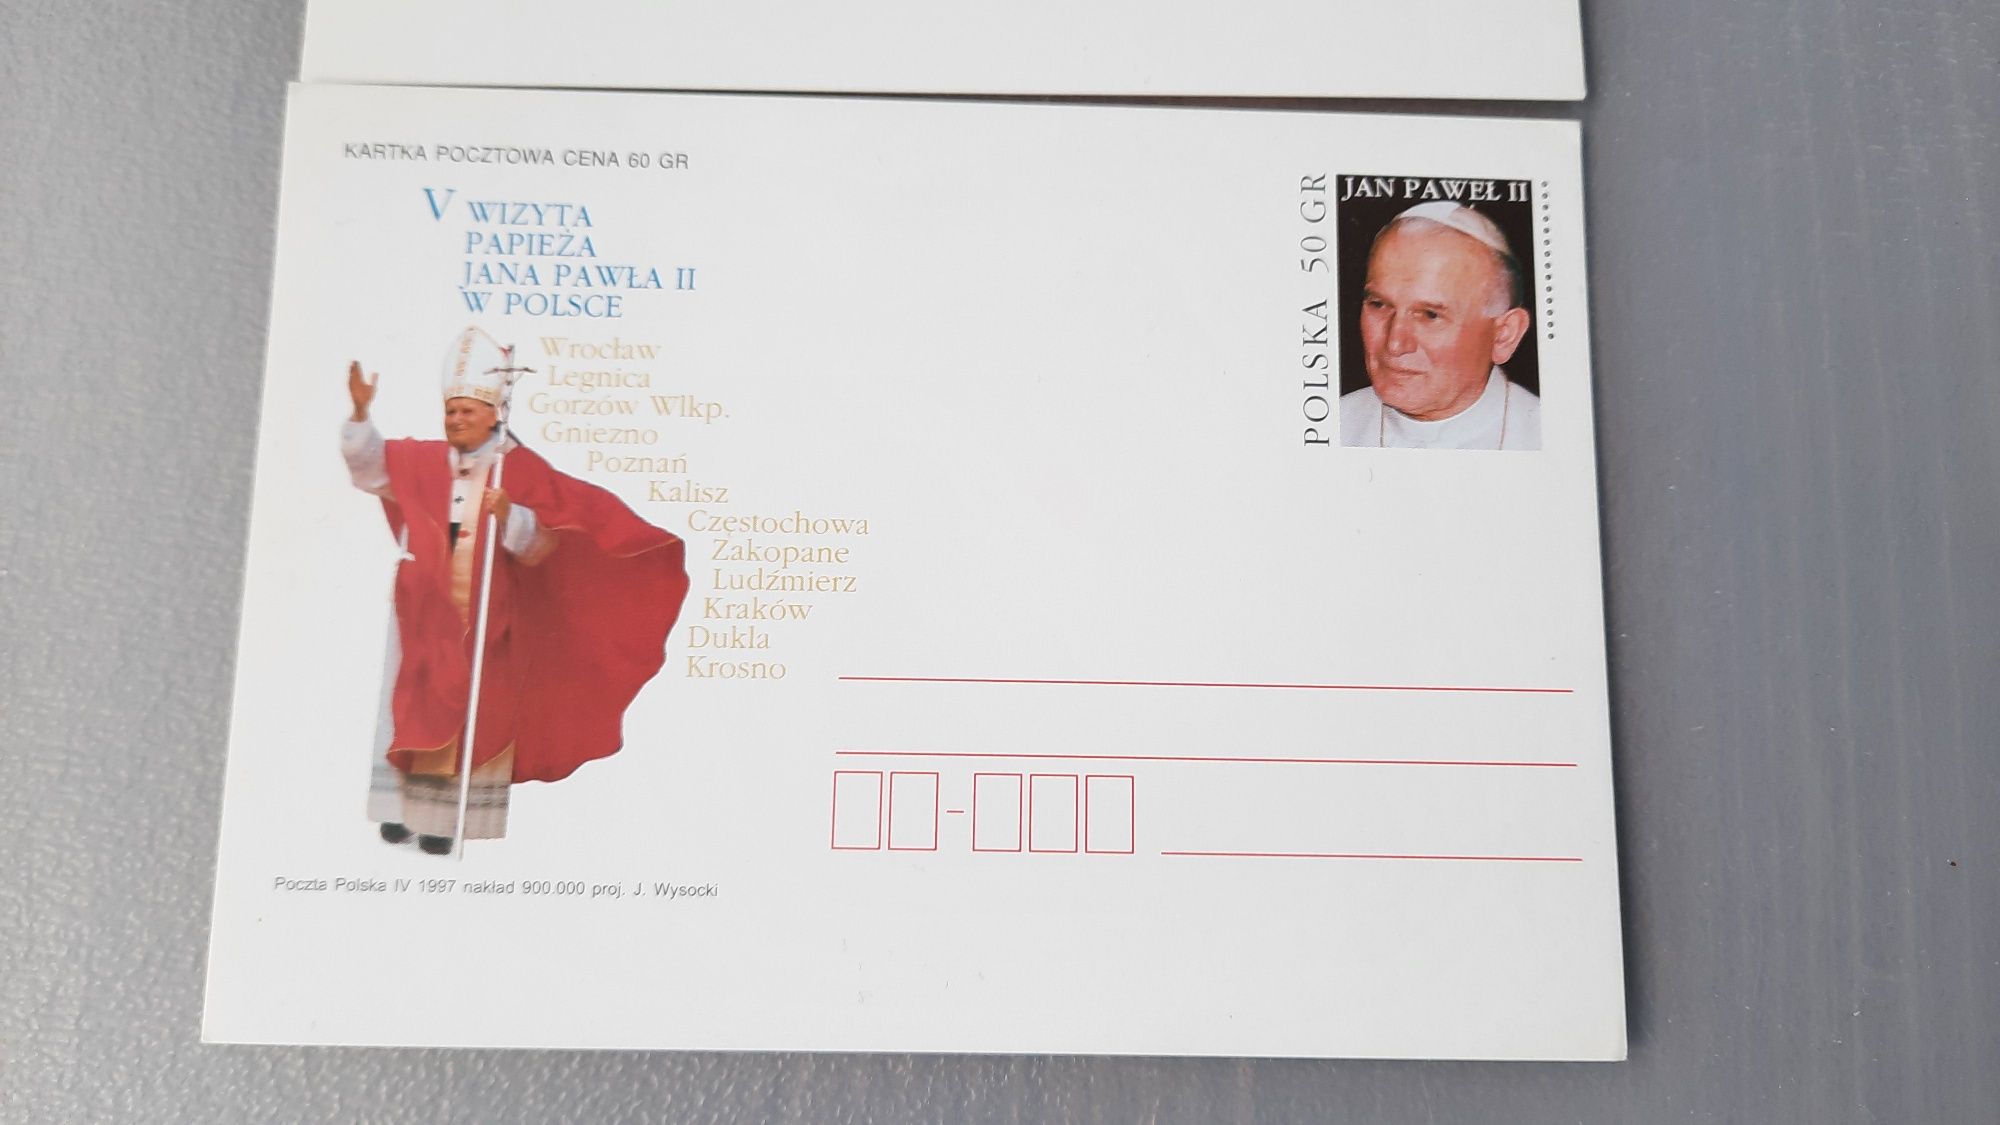 Kartki pocztowe z papieżem